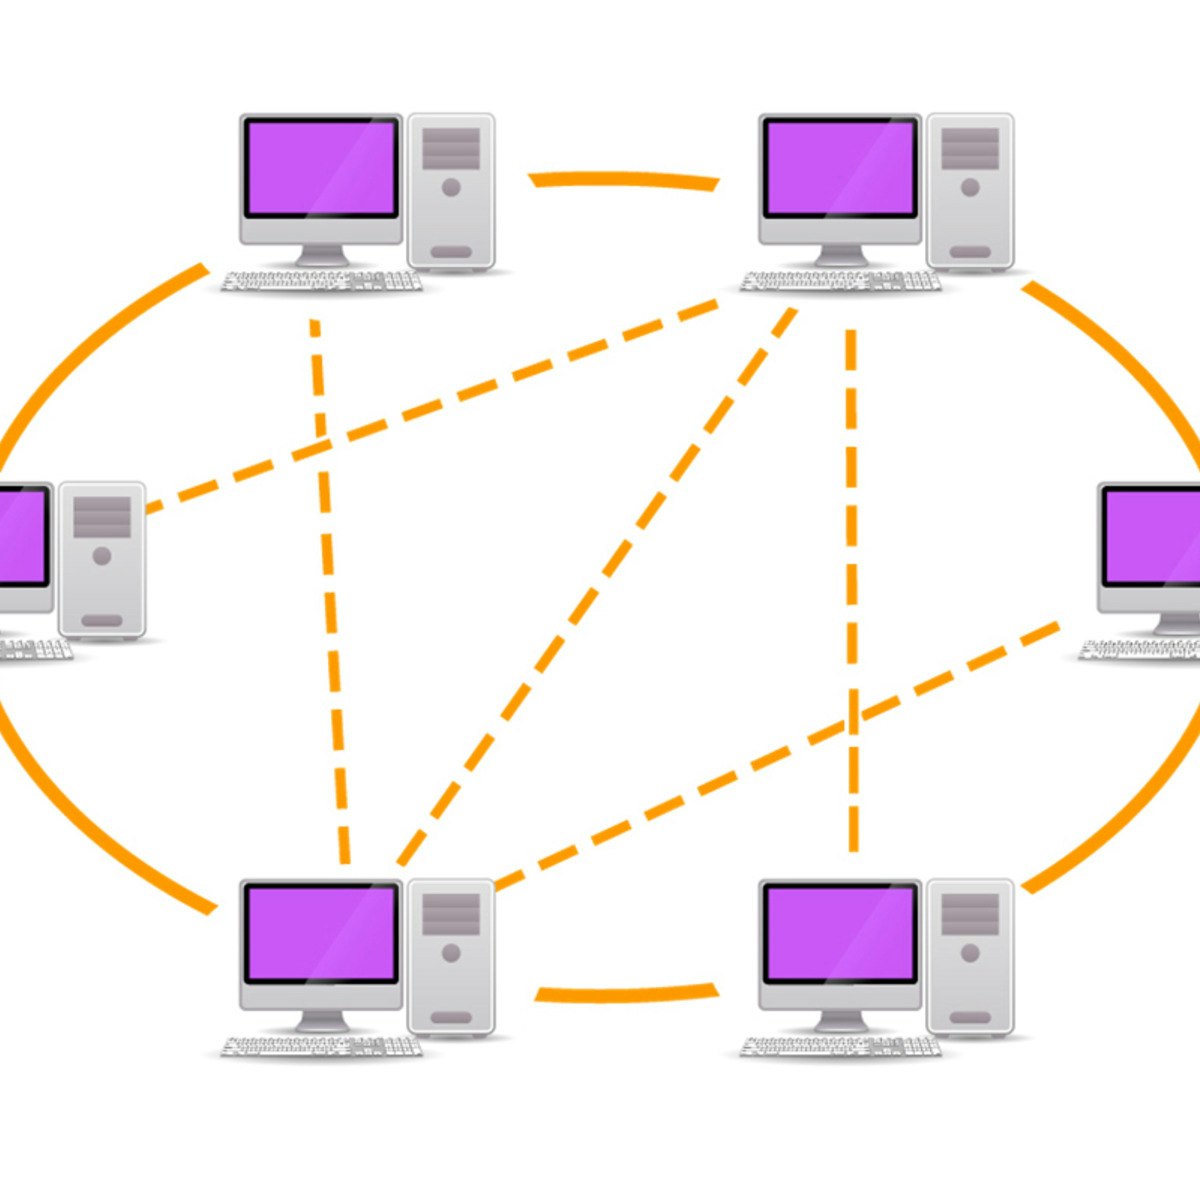 Resolve peer. Peer to peer протокол. Мост компьютерные сети. Peer-to-peer оценка что это. Peer to peer в телеграмме.